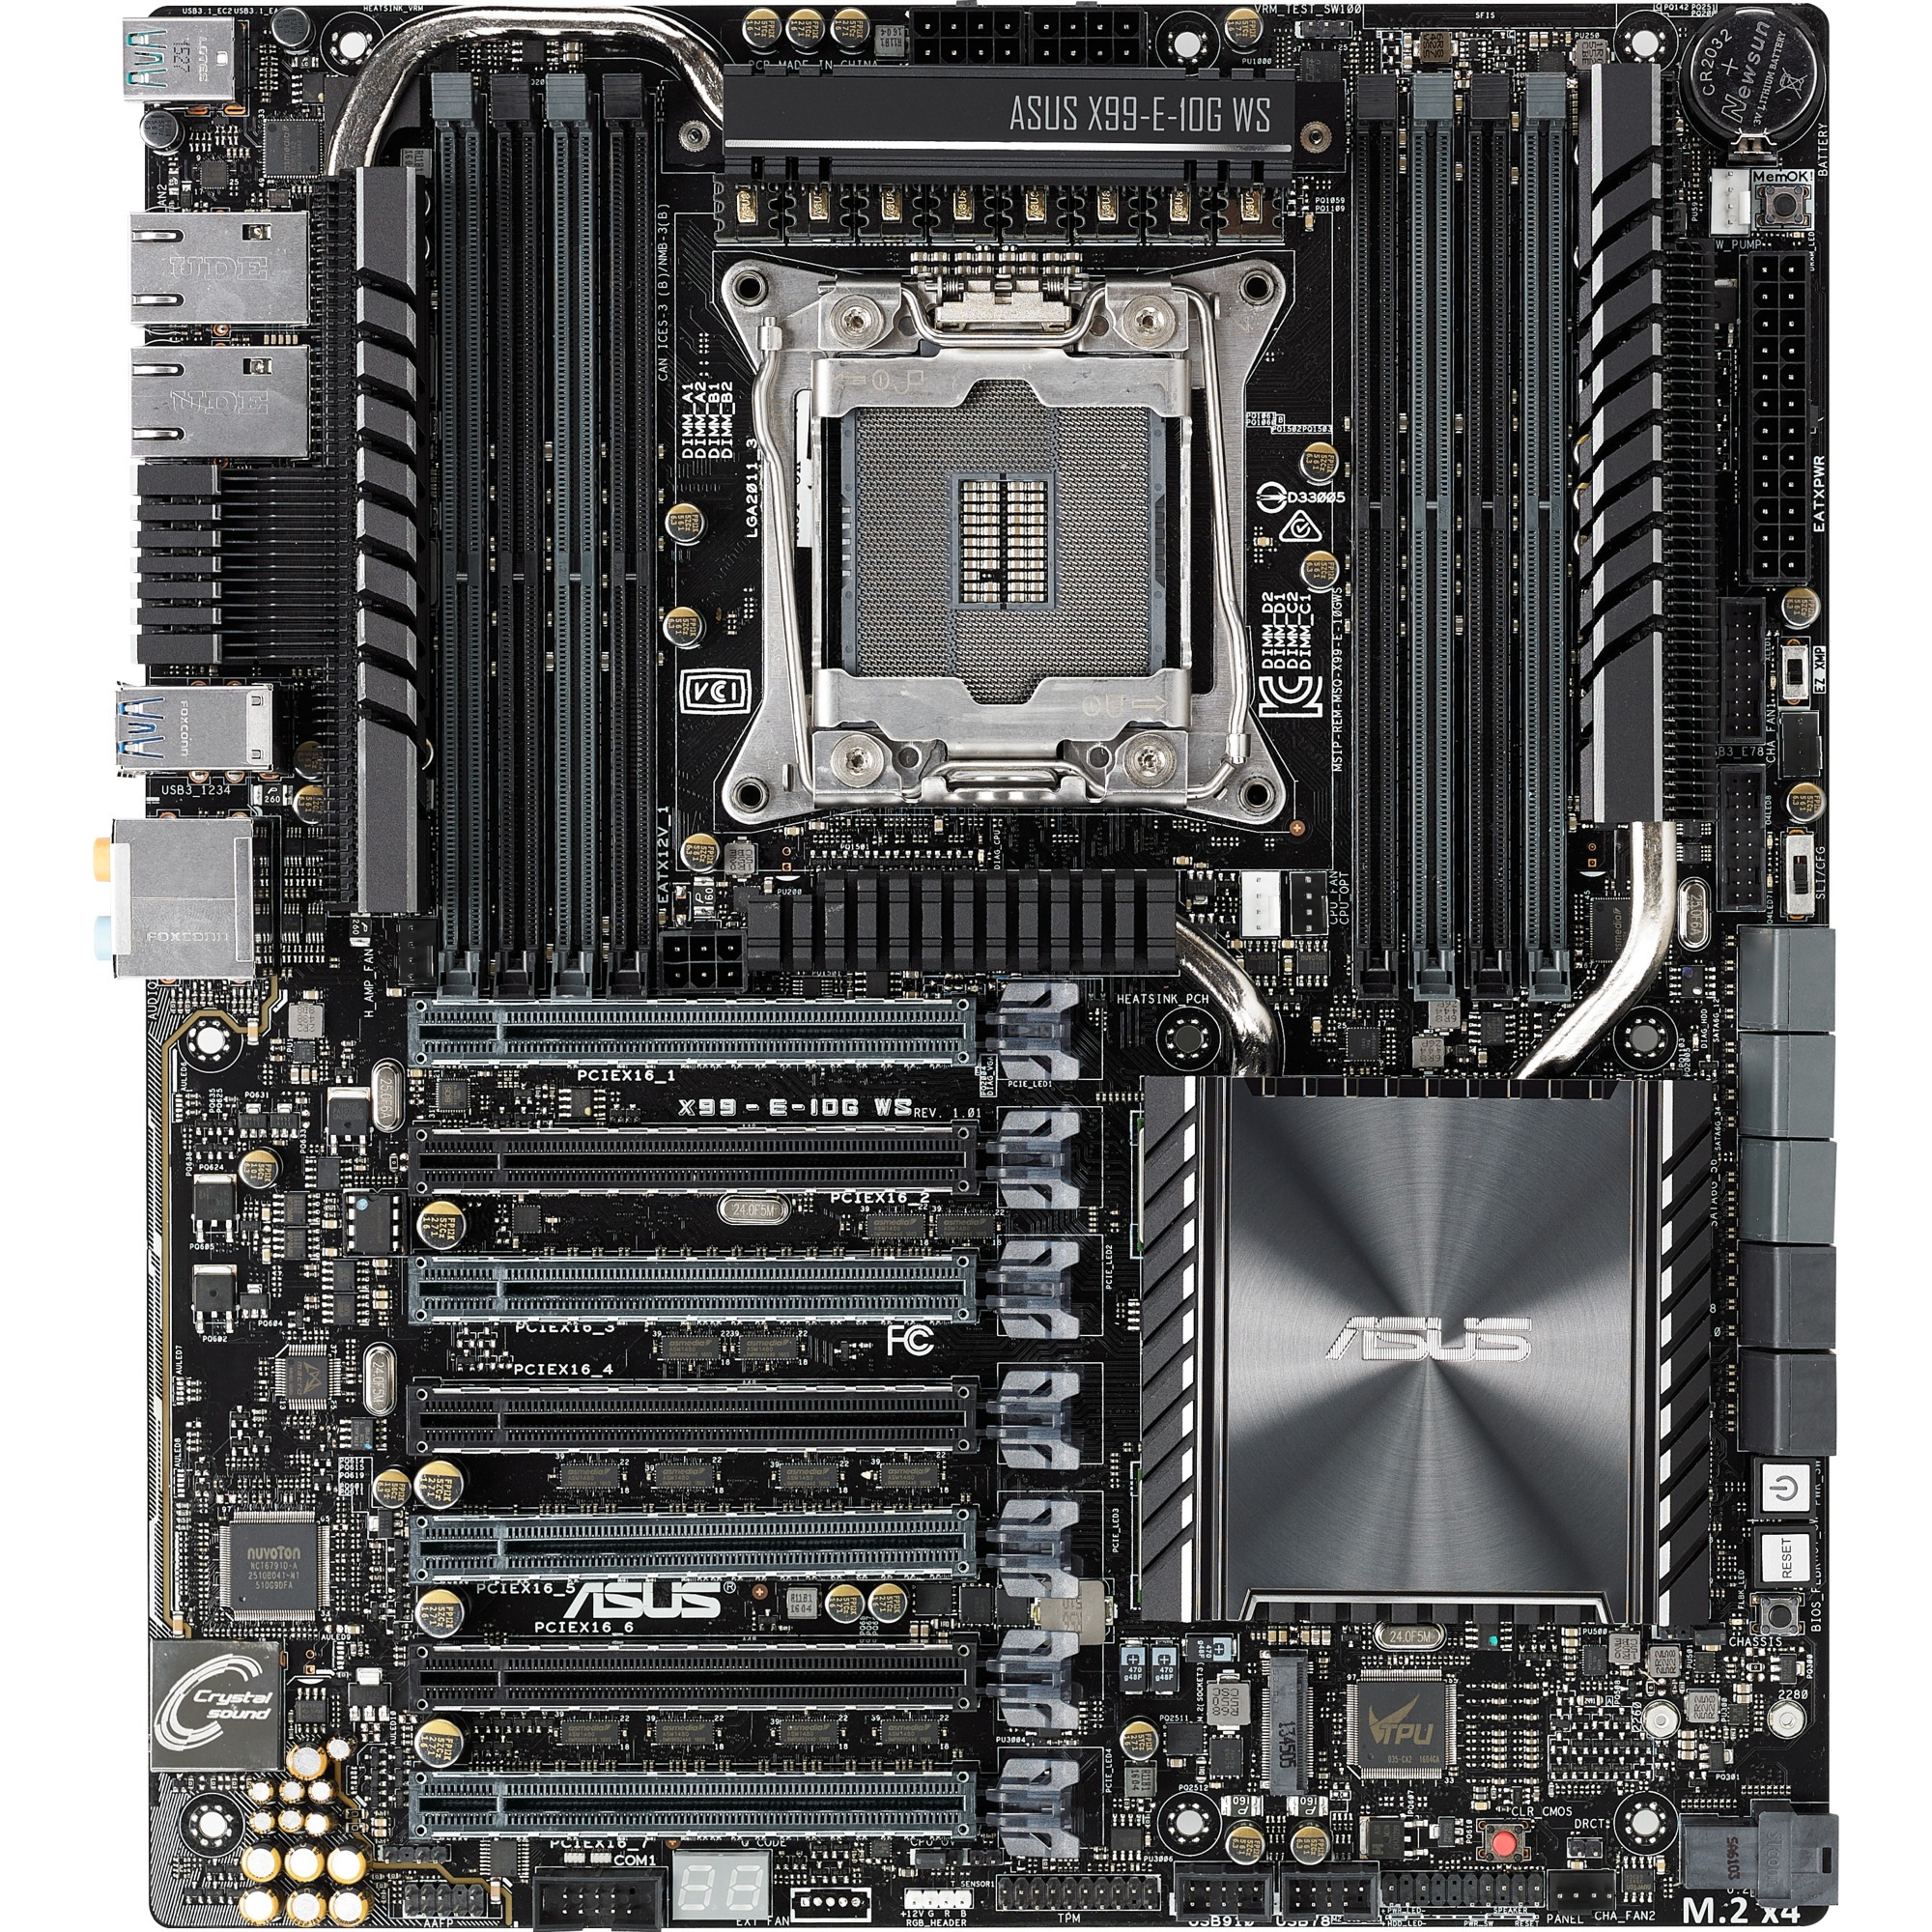 X99-E-10G WS p?yta g?ówna serwerów/stacji roboczych LGA 2011-v3 Intel X99 SSI CEB